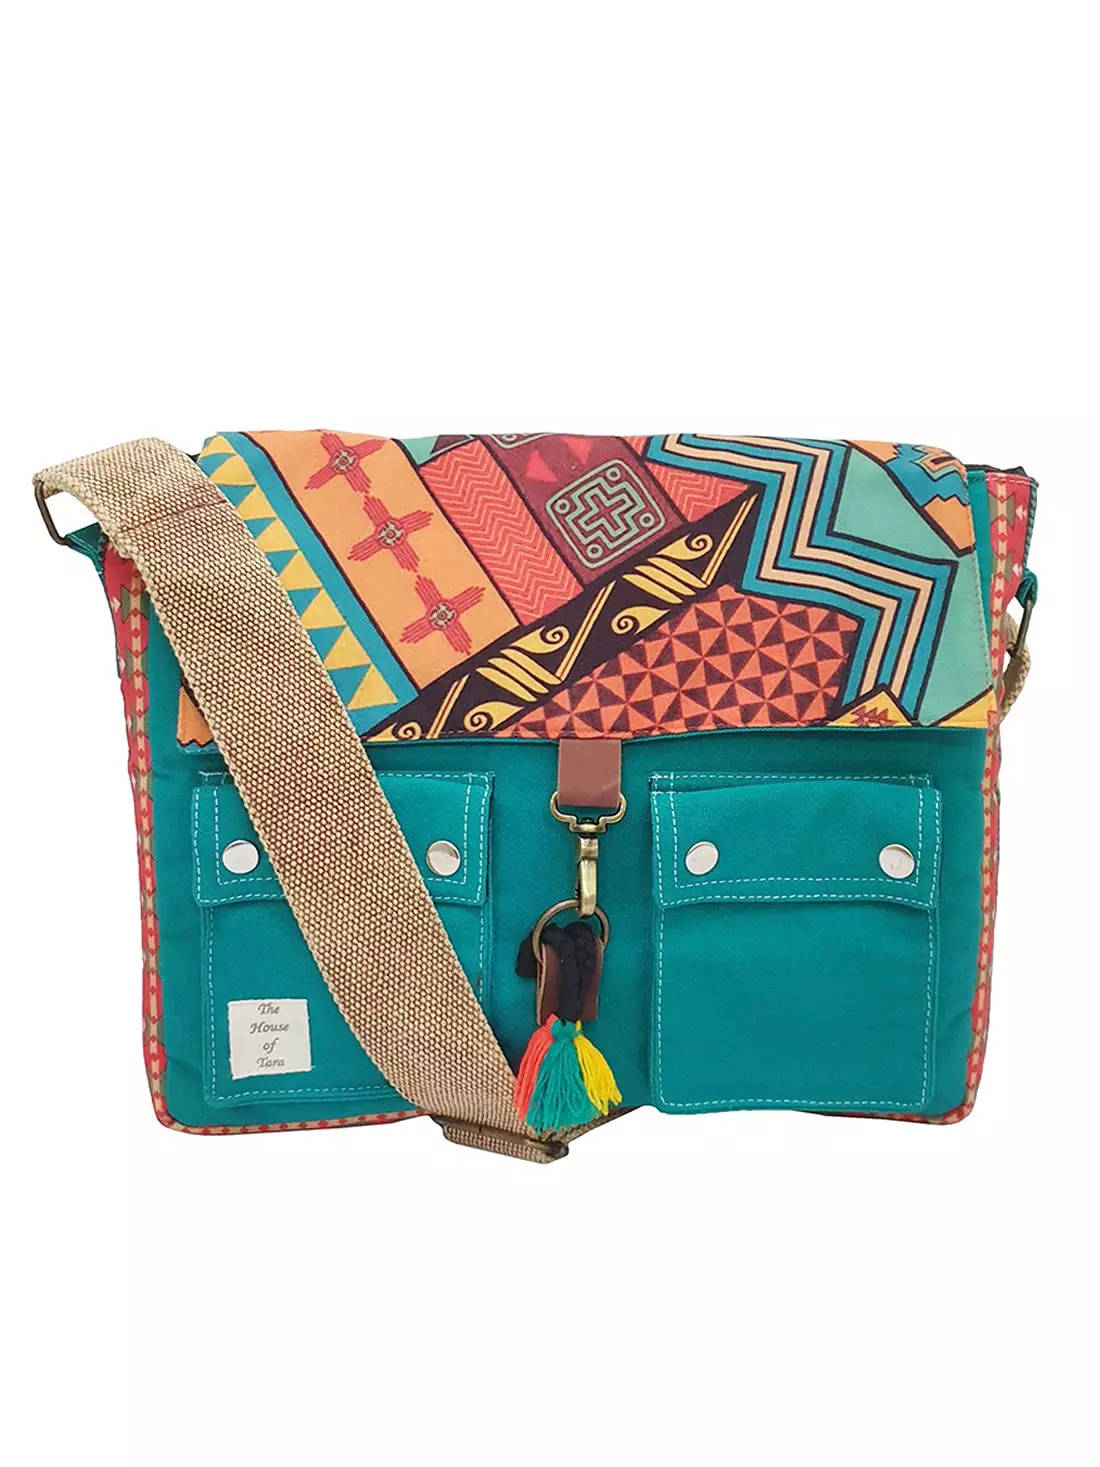 Stylish Side Bag for Women - Shop Now | VM Antique Decor